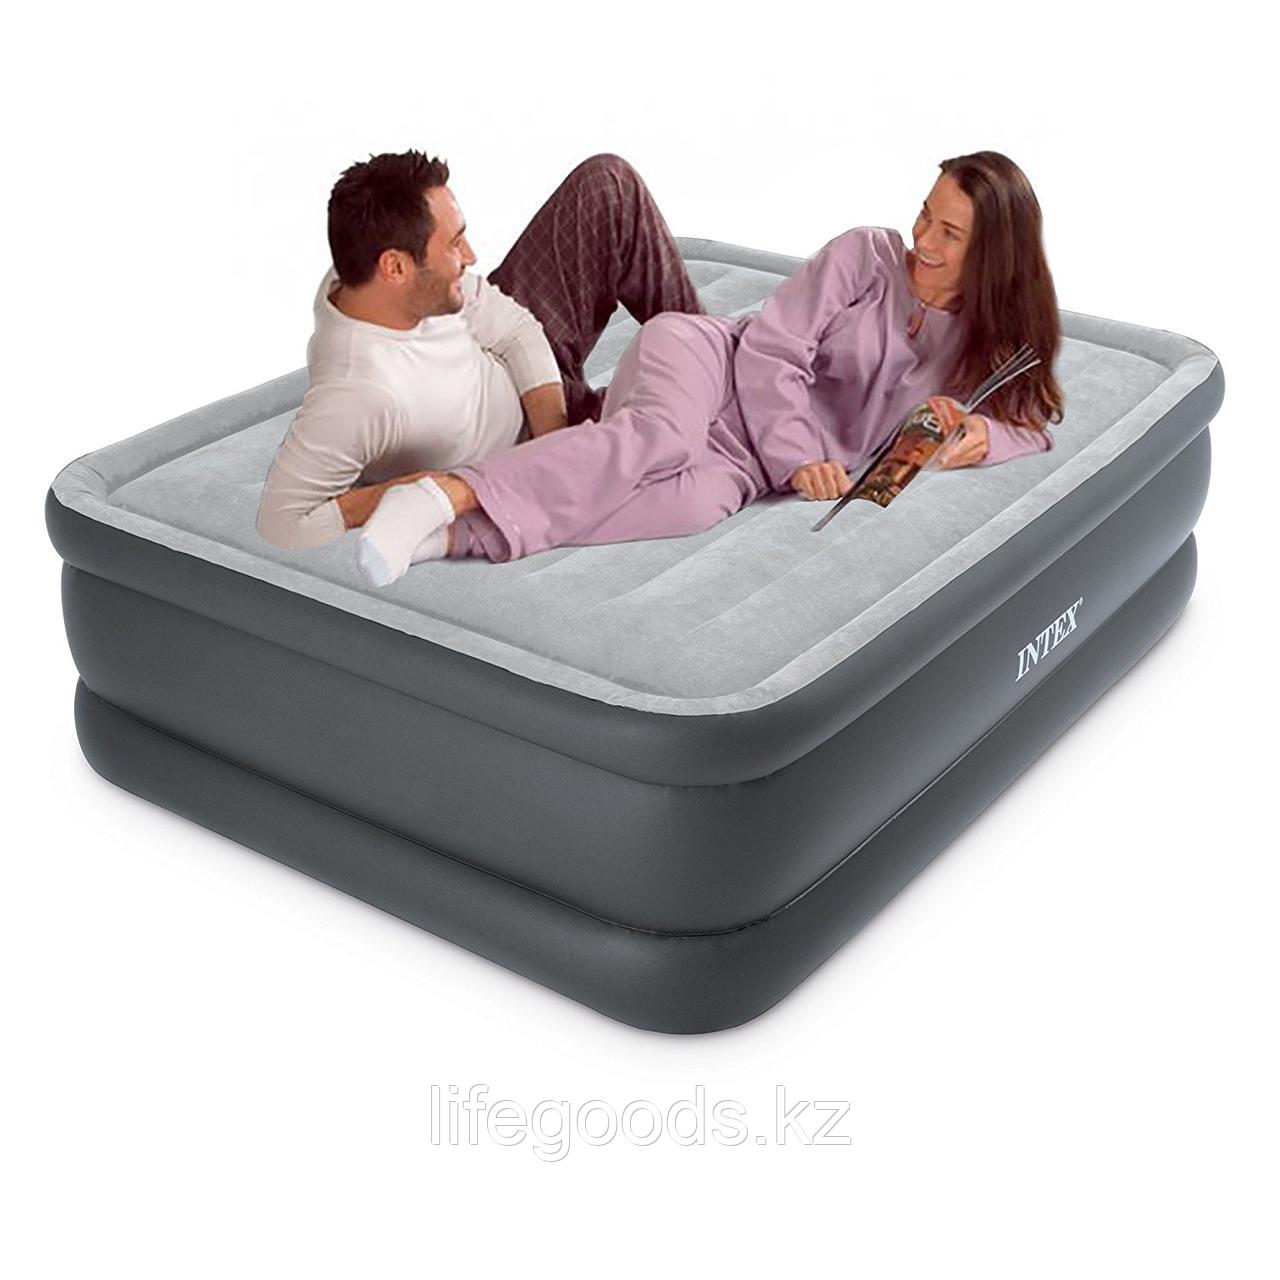 Двуспальная надувная кровать со встроенным насосом, Intex 64140